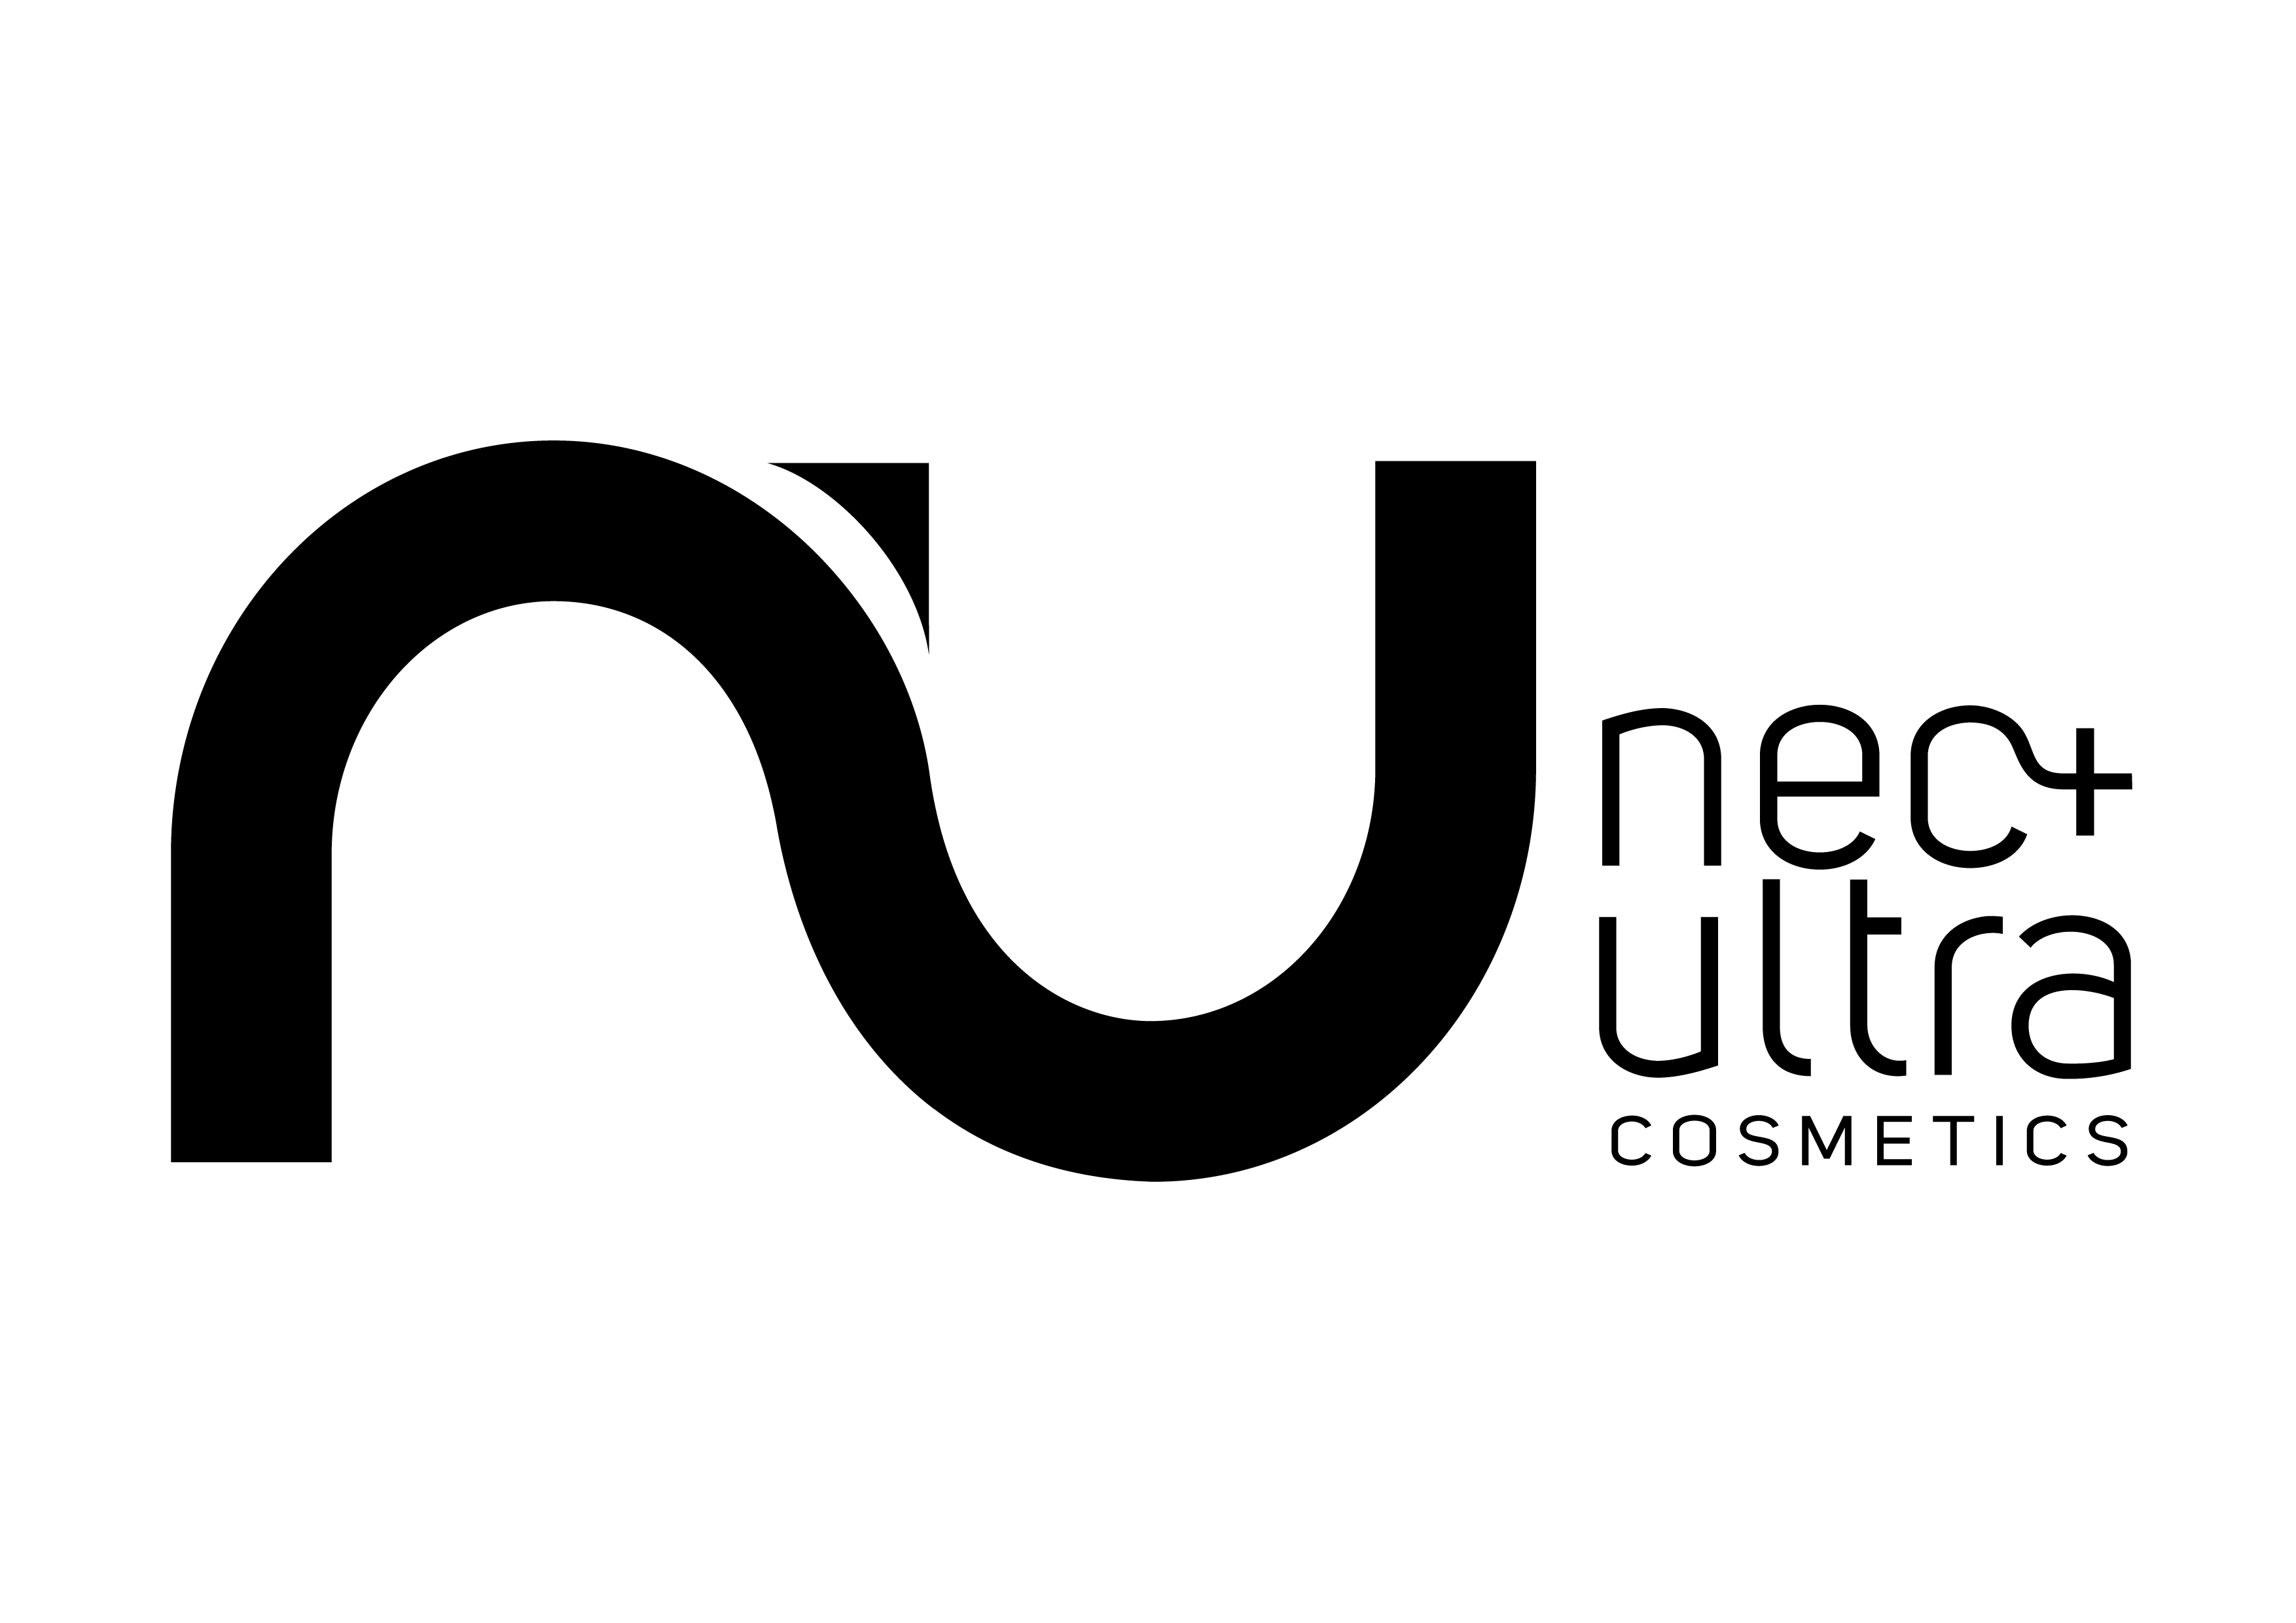 Nec Plus Ultra Cosmetics